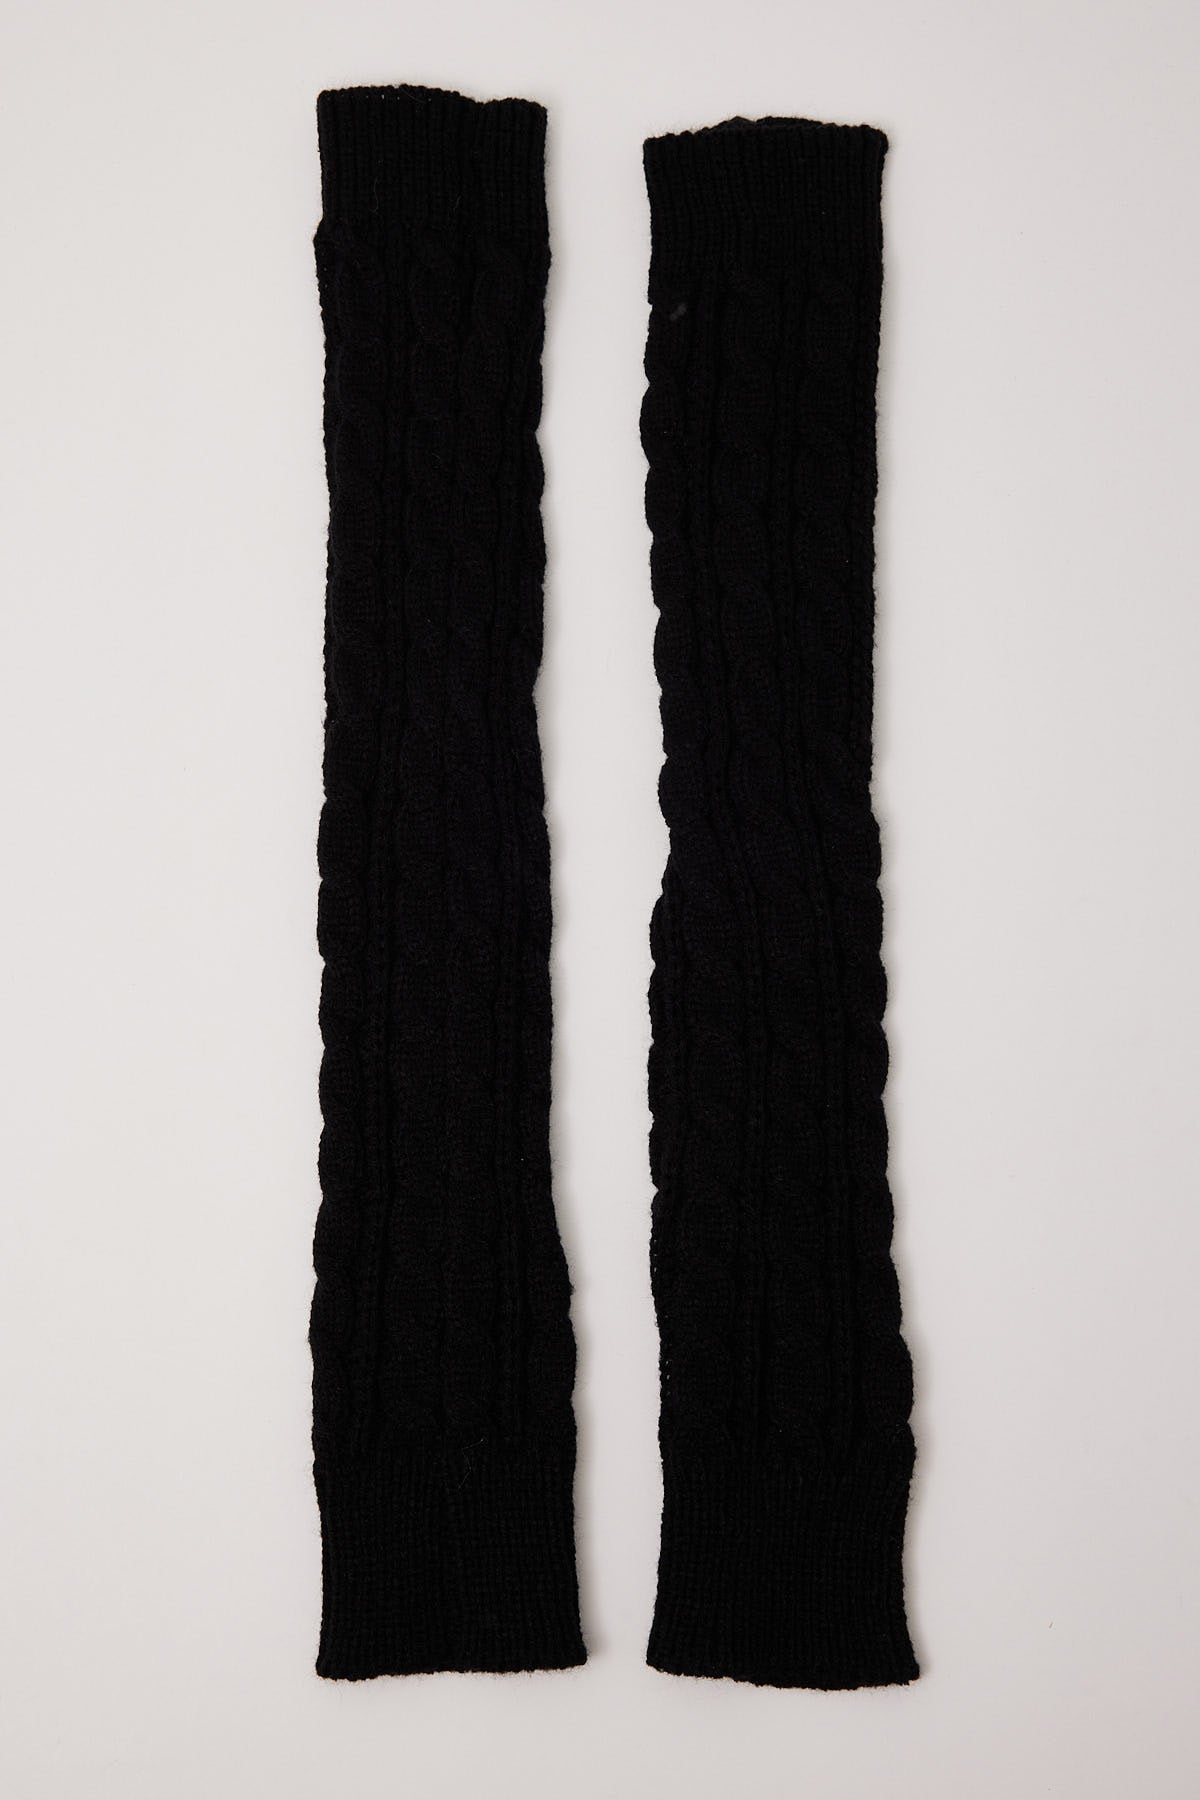 Token Knit Arm Warmers Black